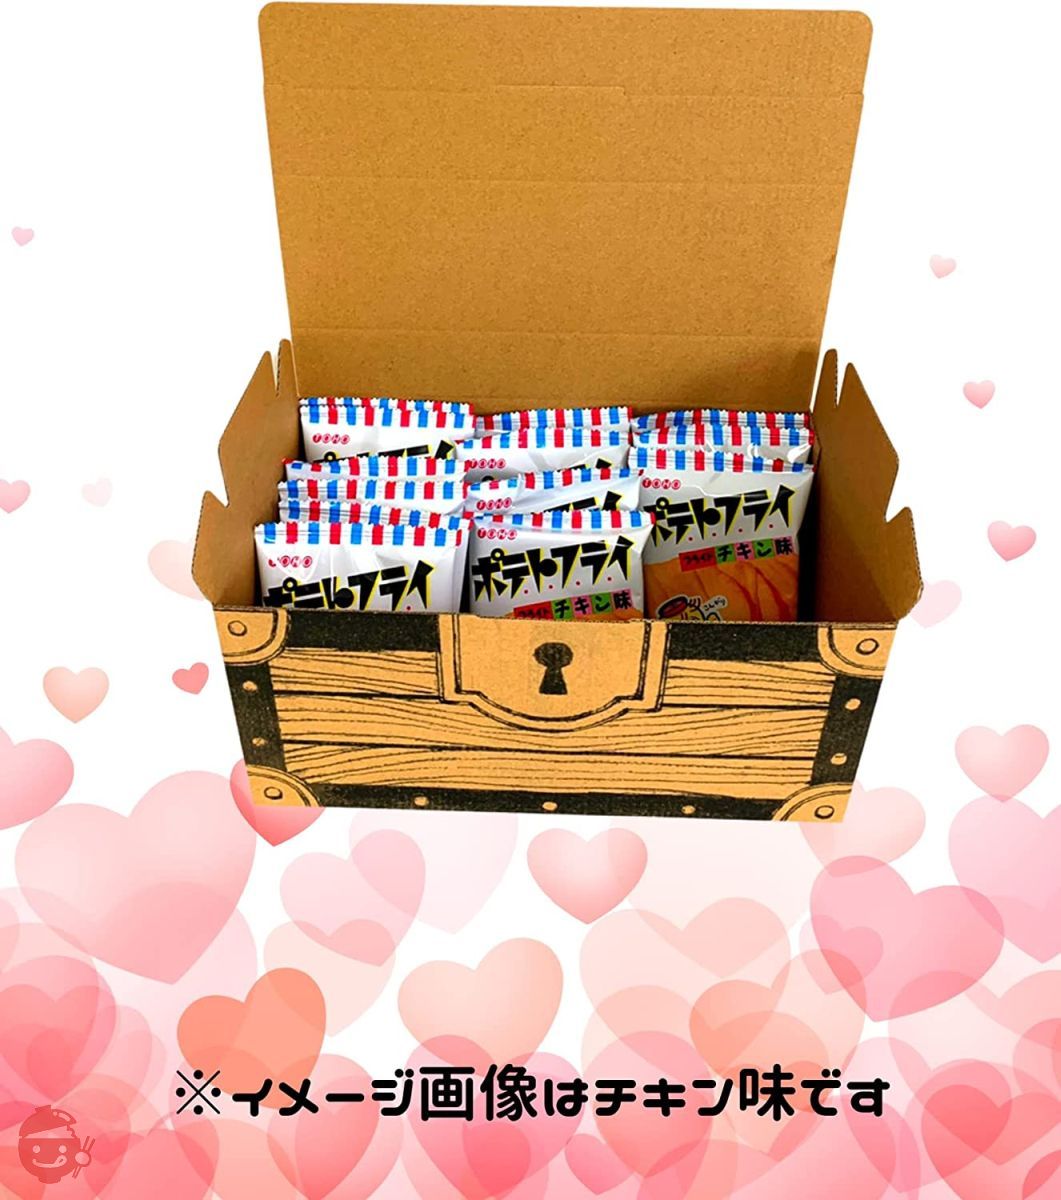 TOHO 東豊製菓 ポテトフライ フライド カルビ焼の味 20枚入 宝箱 ギフトボックス プレゼント プチギフト 職場の差し入れにもどうぞ (ポテトフライ)の画像